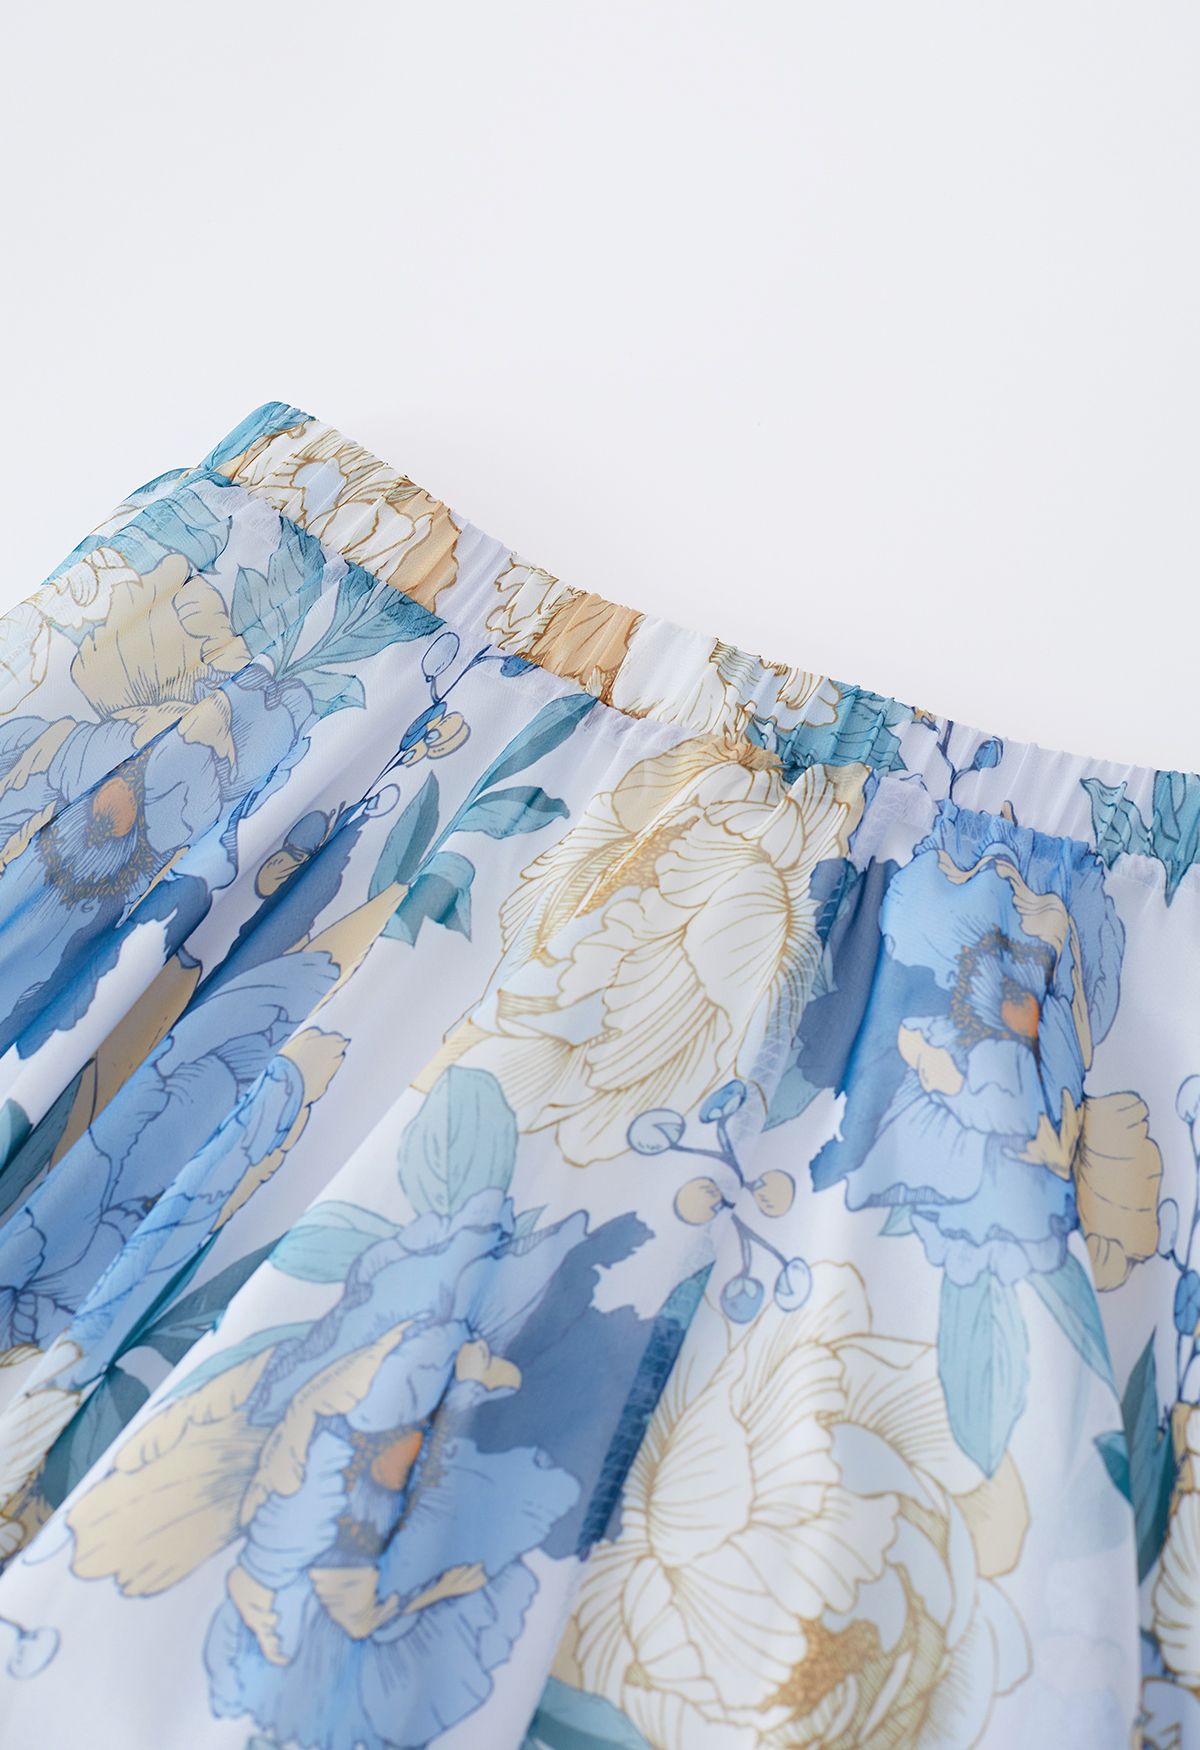 Falda larga de gasa con aroma fresco floral azulado